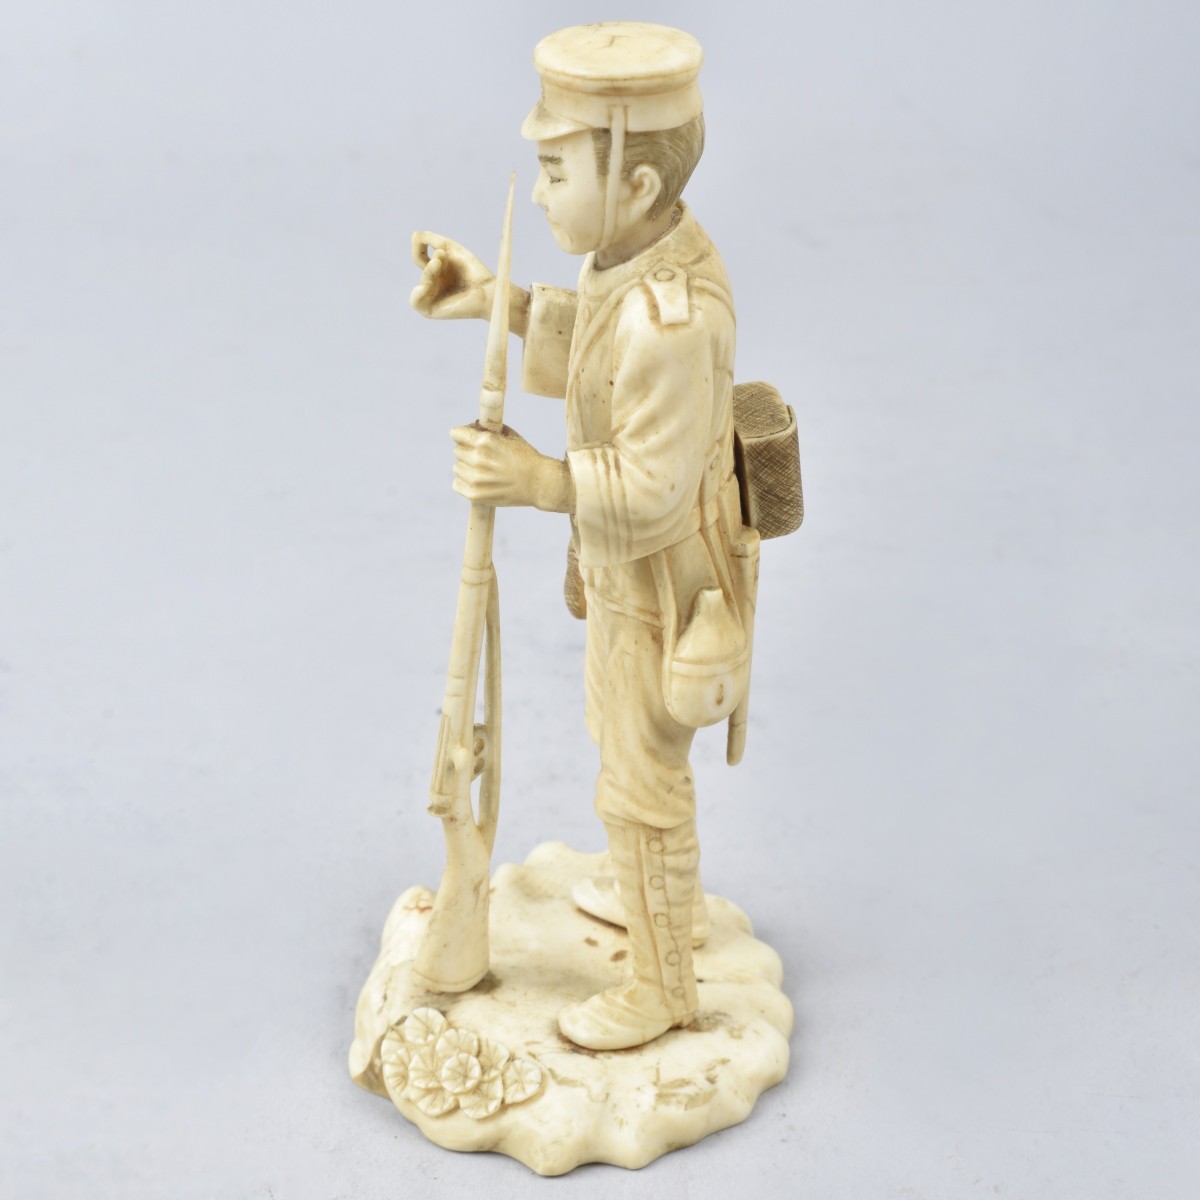 Antique Japanese Soldier Figurine